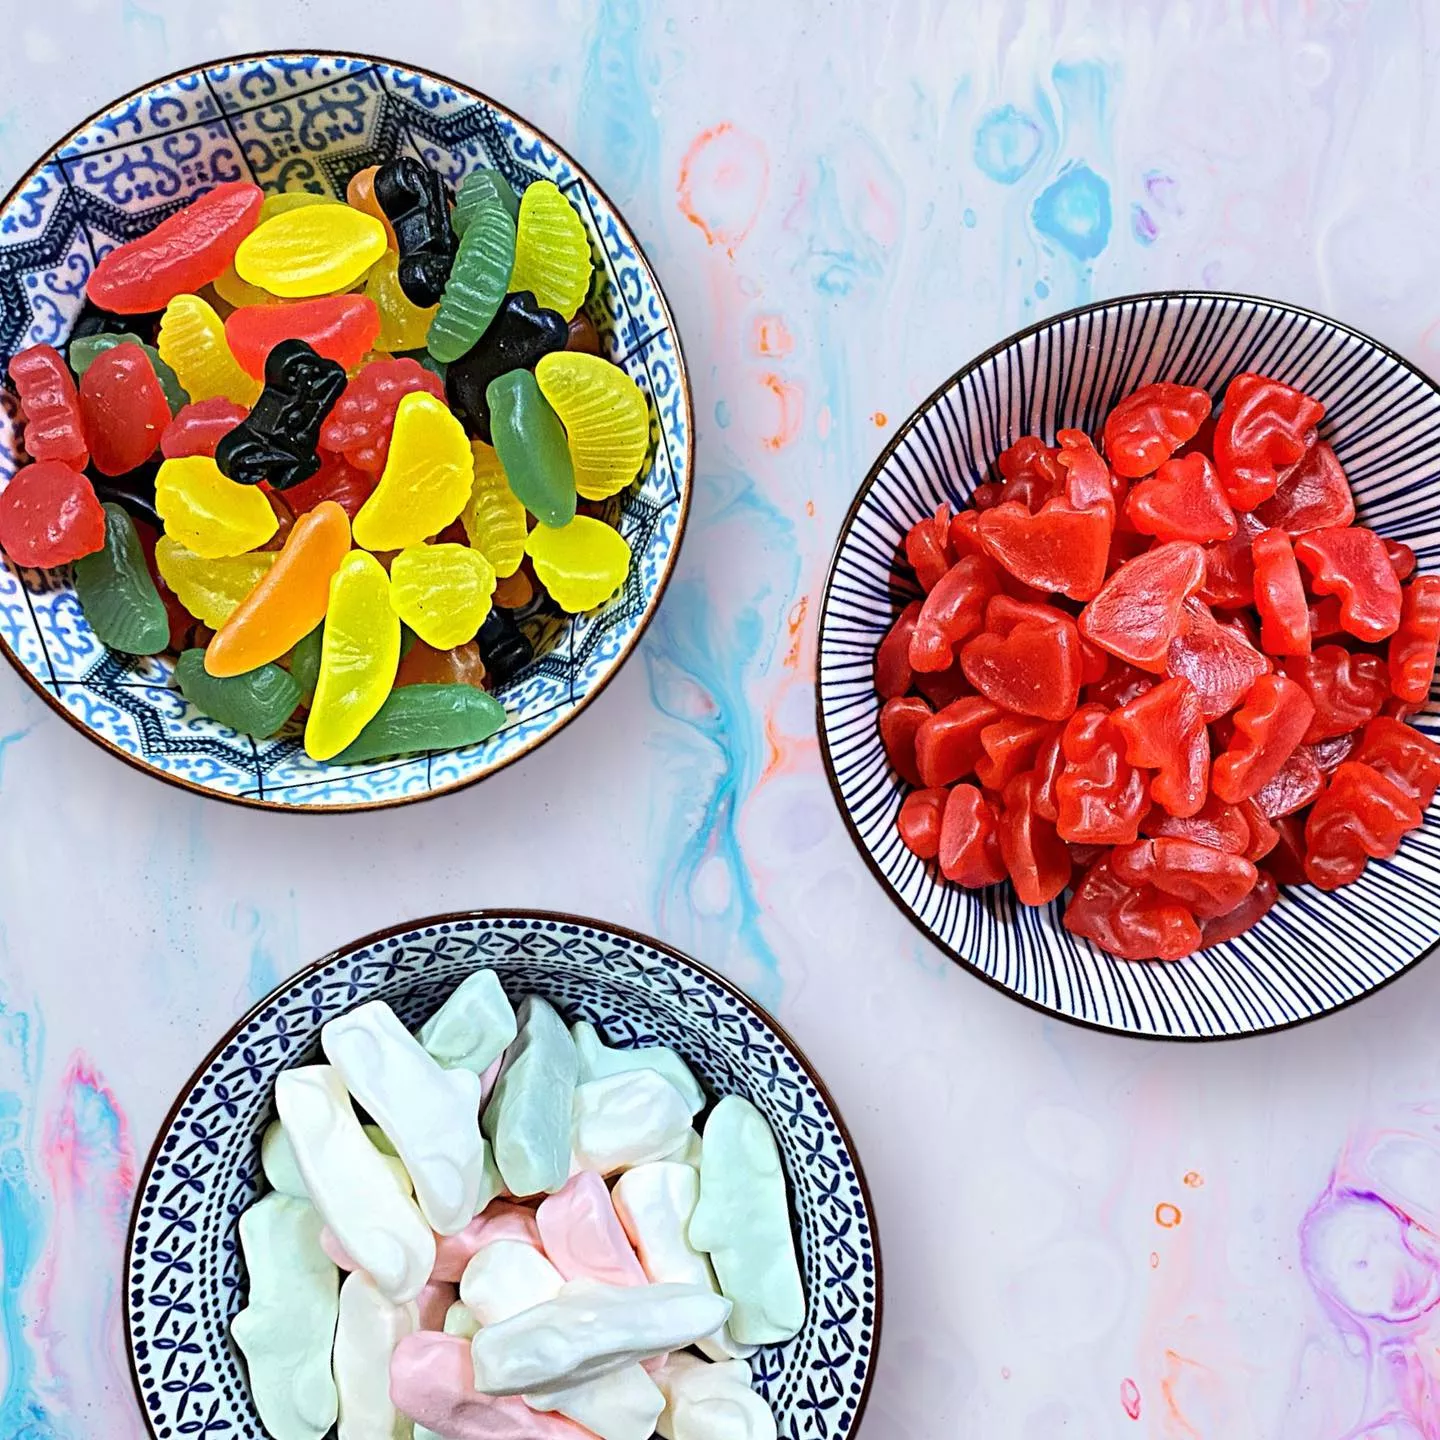 Schweden ist Spitzenreiter beim Verzehr von Süßigkeiten 1